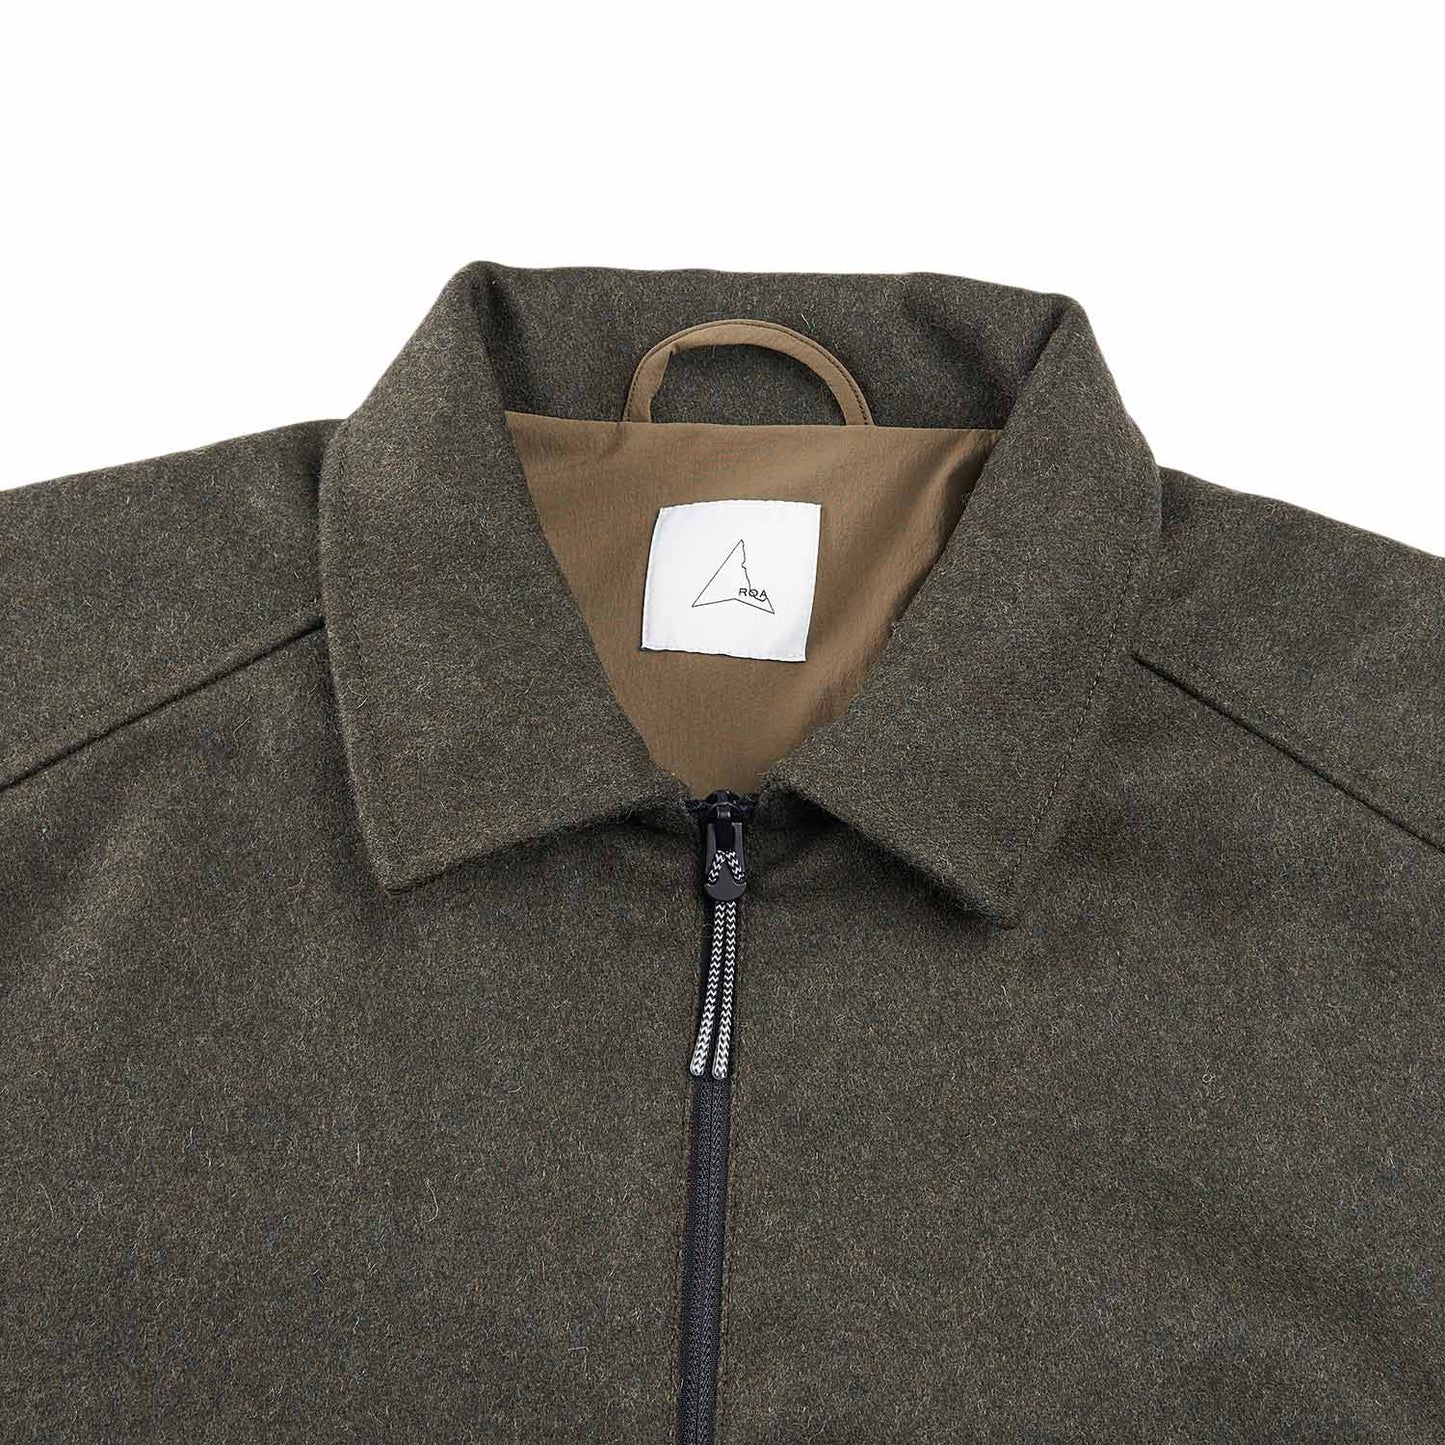 roa zip up shirt jacket (olive)